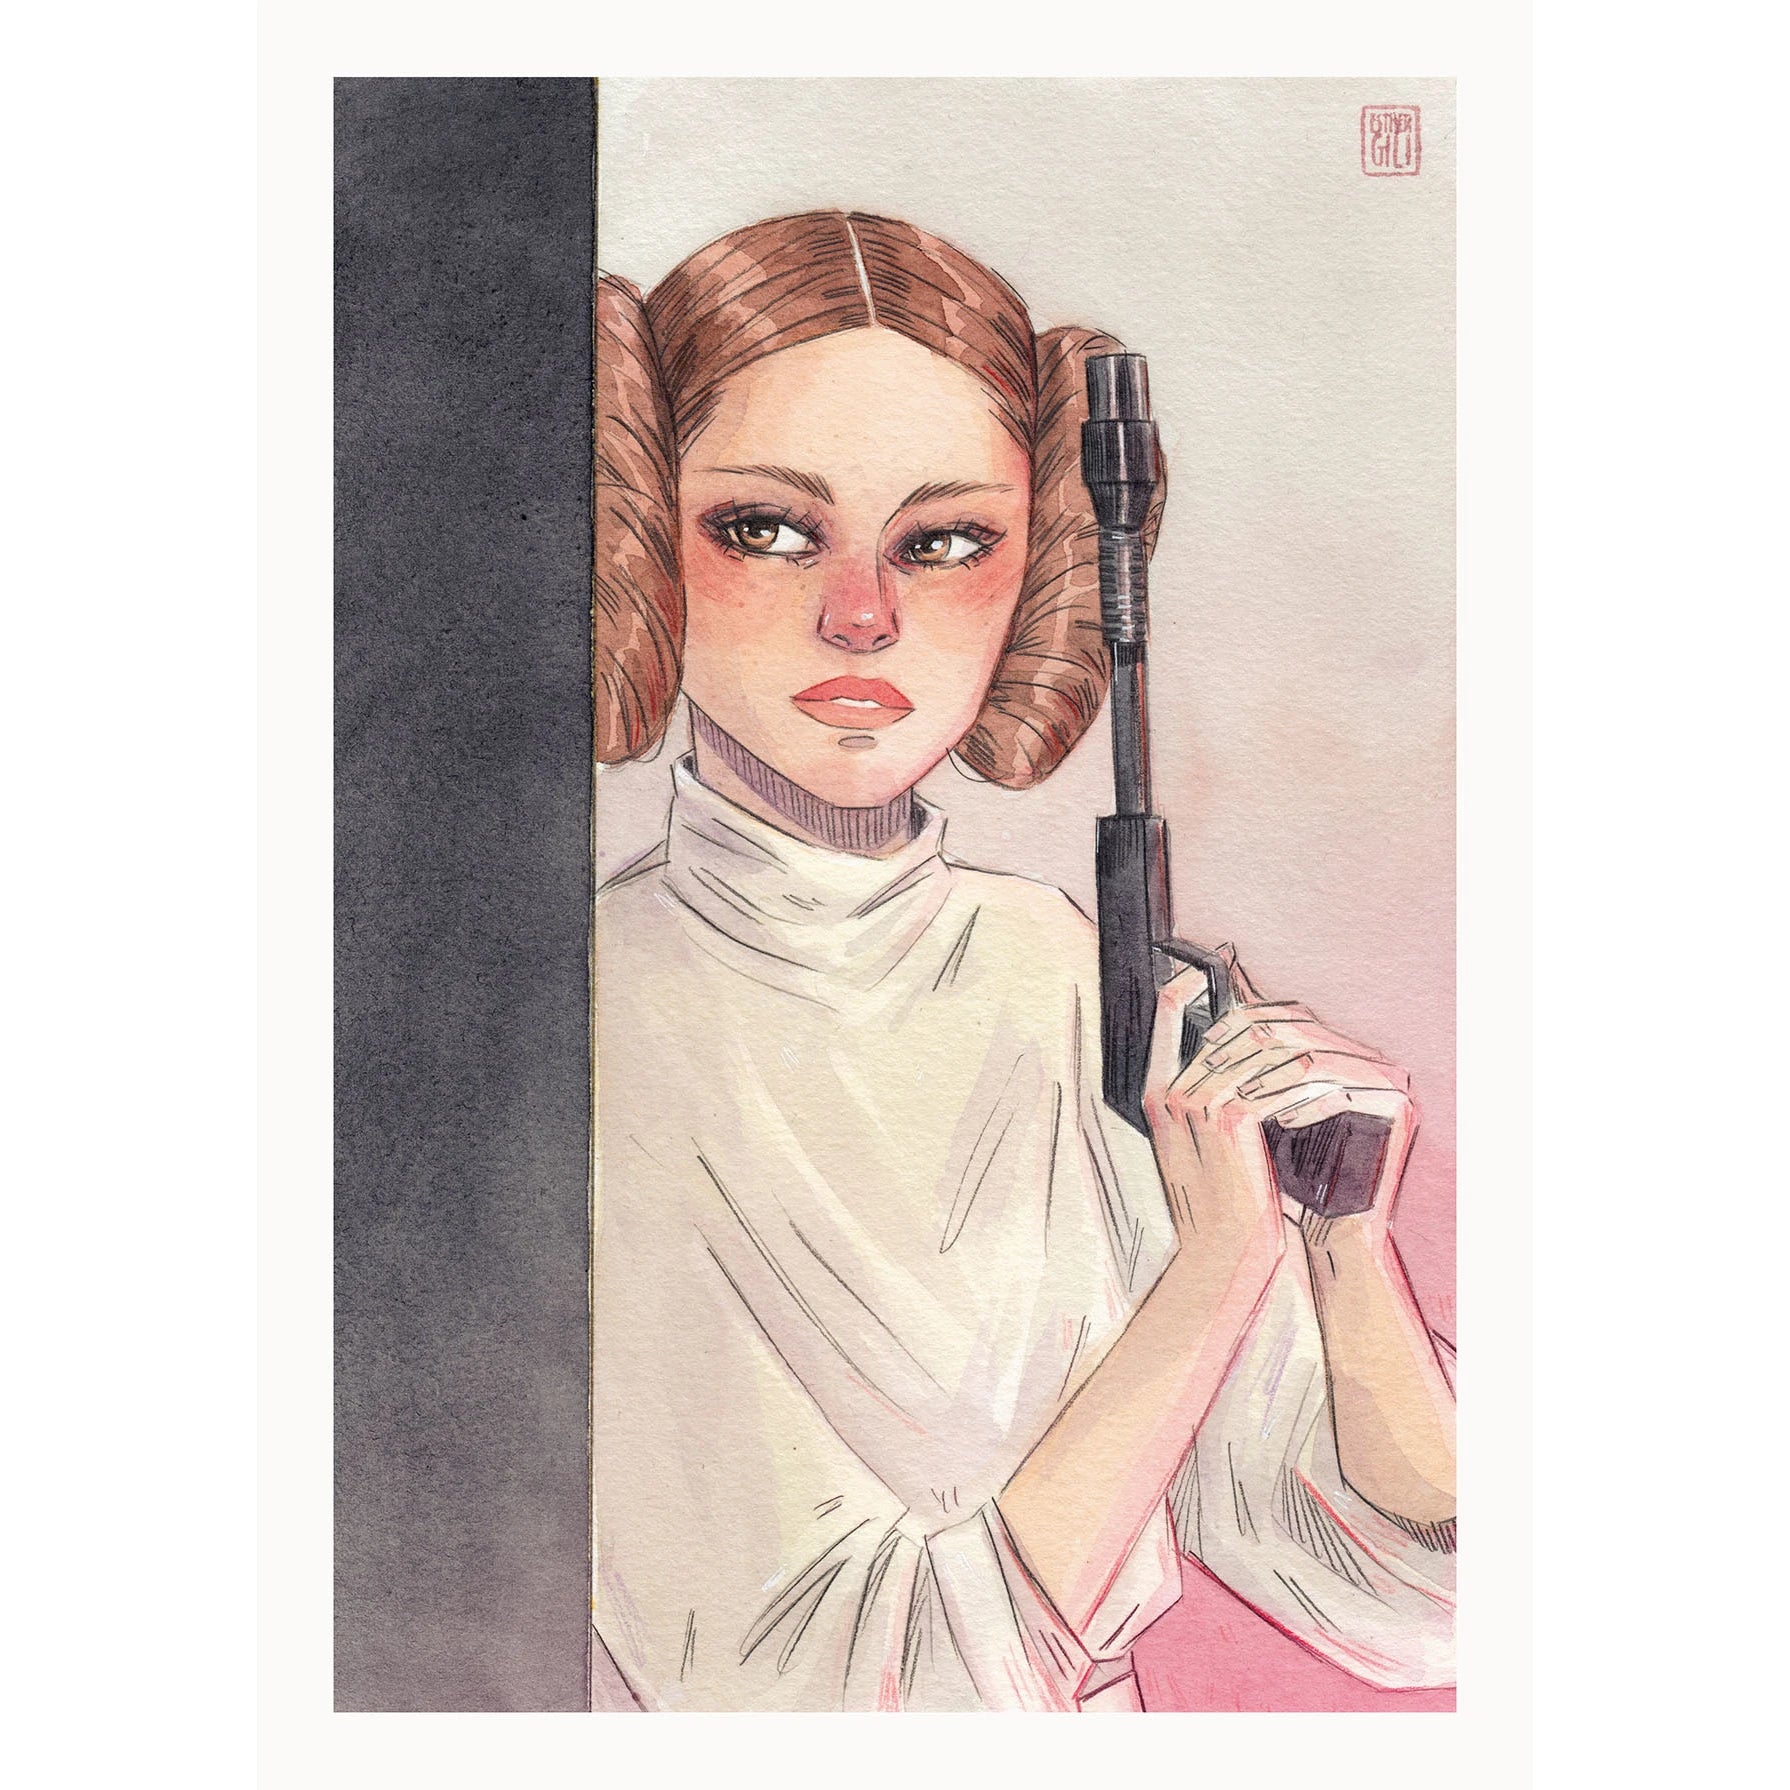 Ilustración de Esthre Gili de la princesa Leia de Star Wars con rodetes, vestido blanco y un arma en las manos 